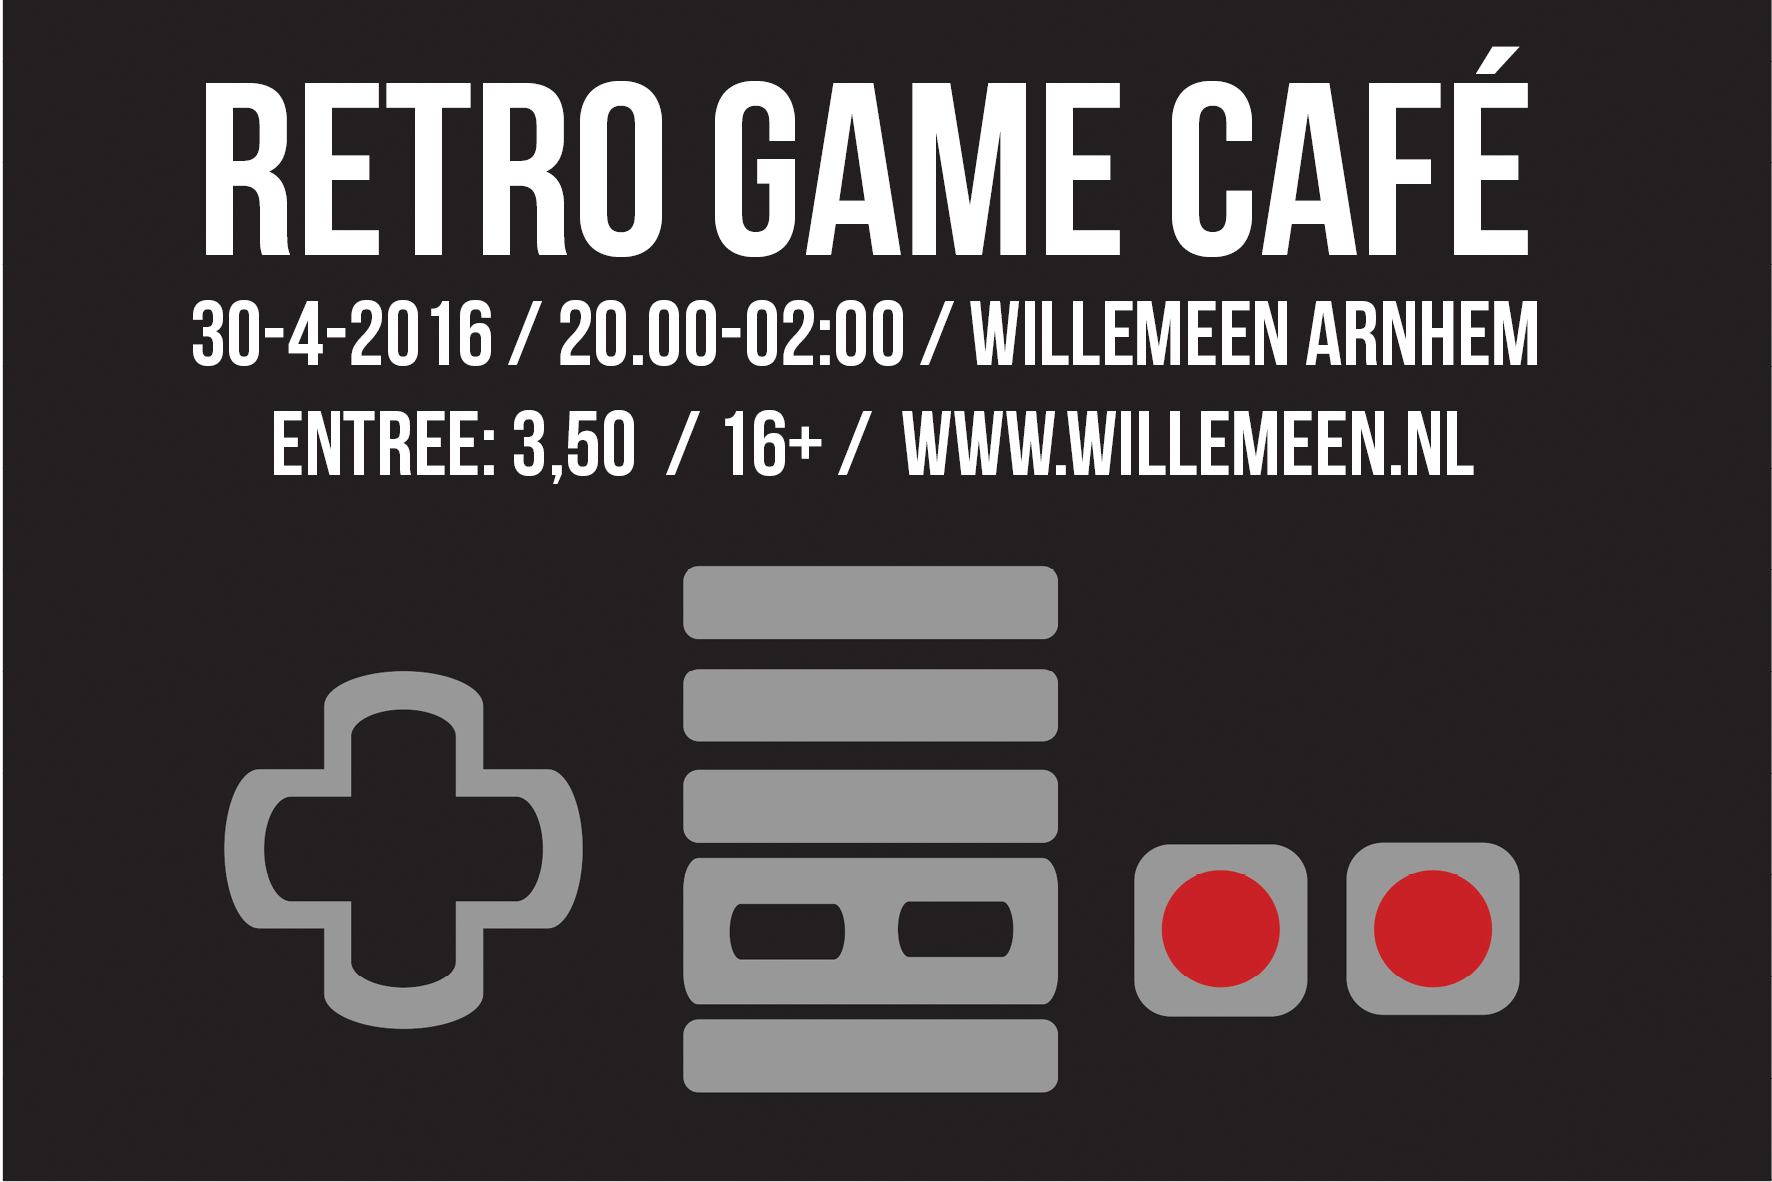 Game Café Arnhem